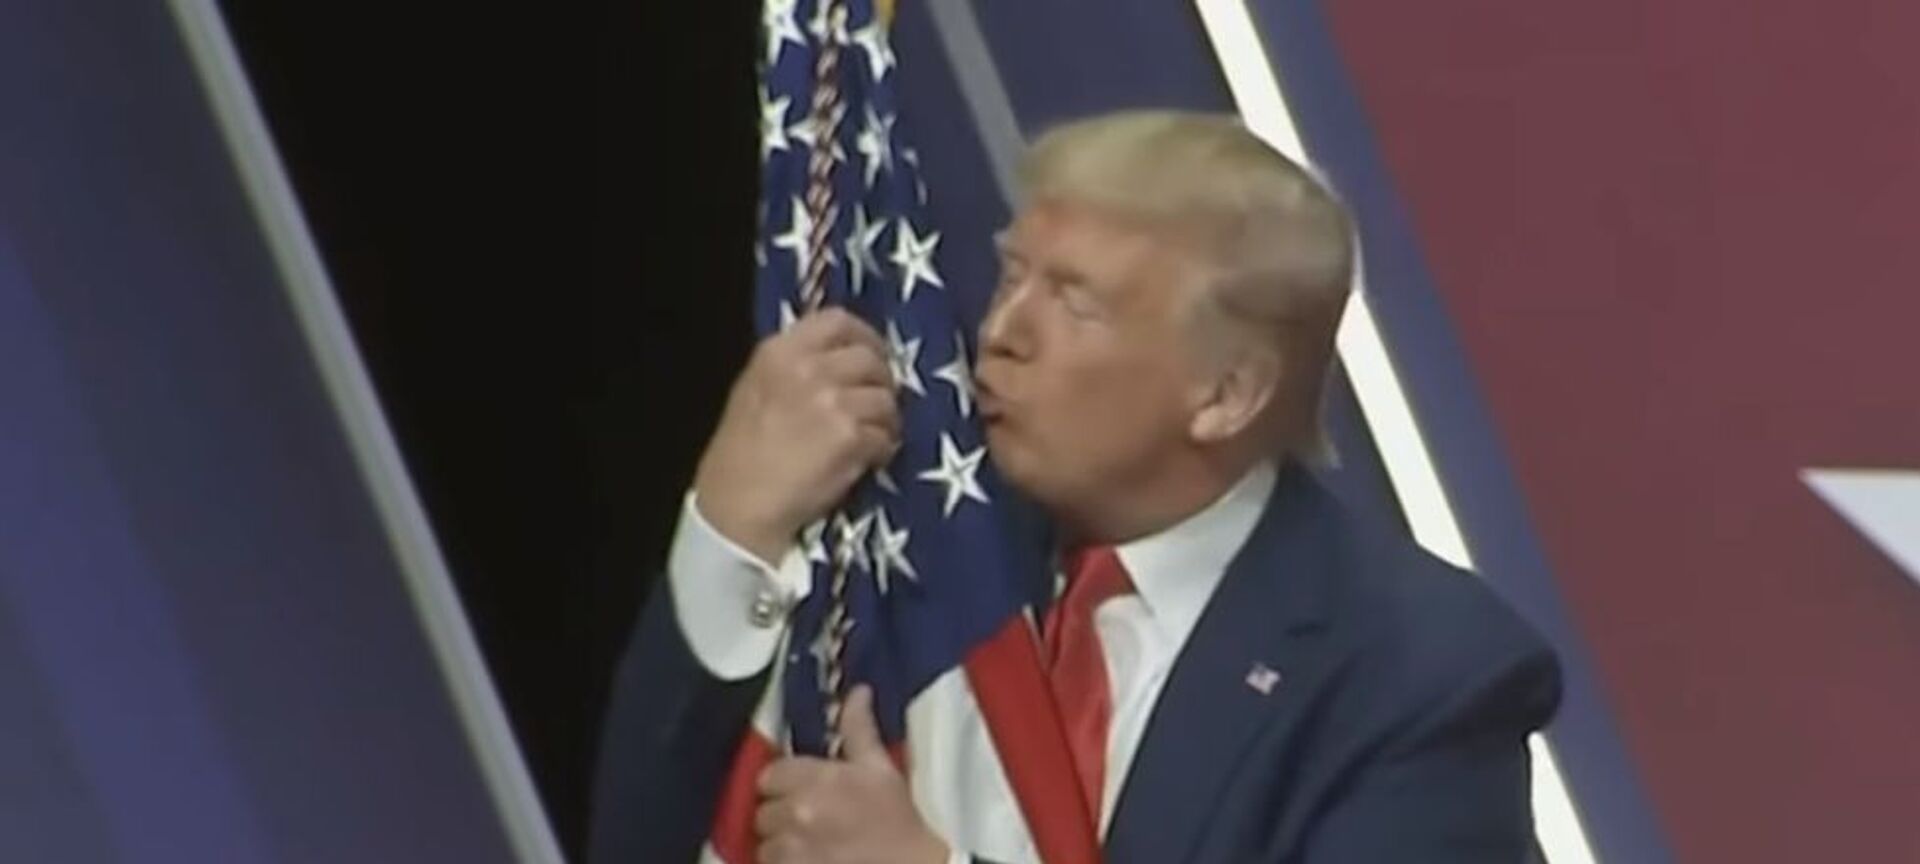 А он его целует: Дональд Трамп снова обнял американский флаг - видео - Sputnik Таджикистан, 1920, 01.03.2020